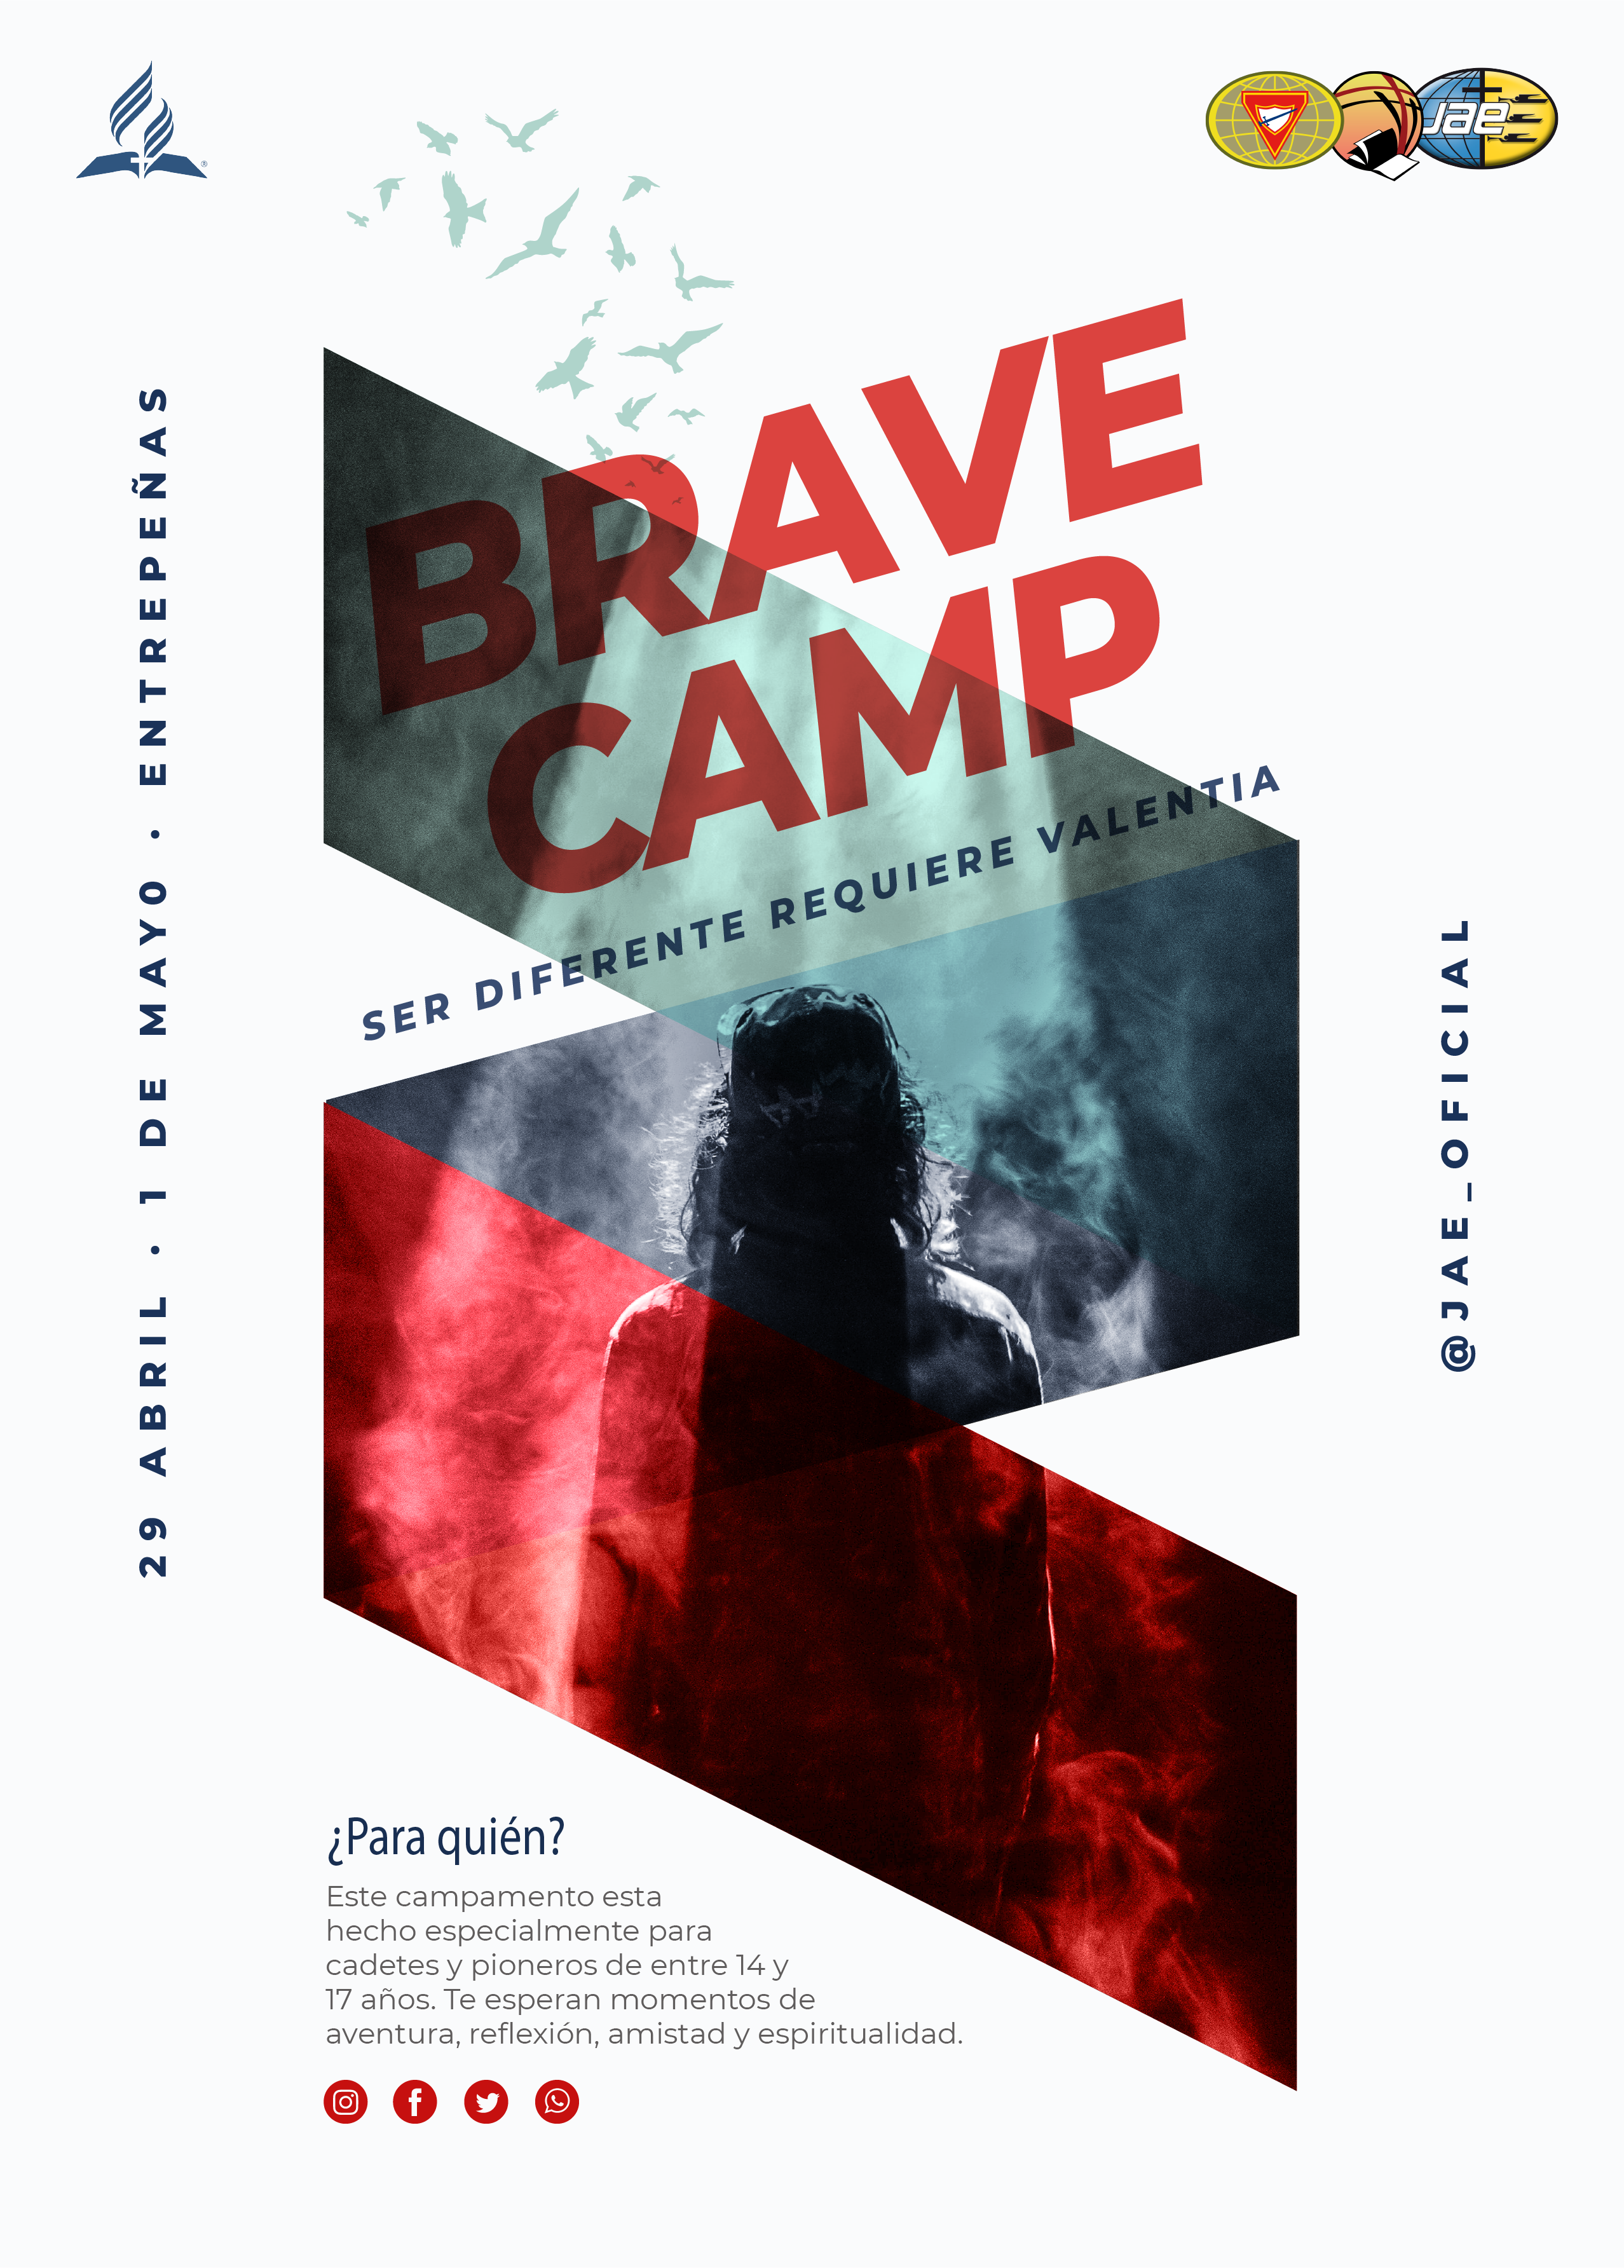 Brave Camp 2022 – Ser diferente requiere valentía